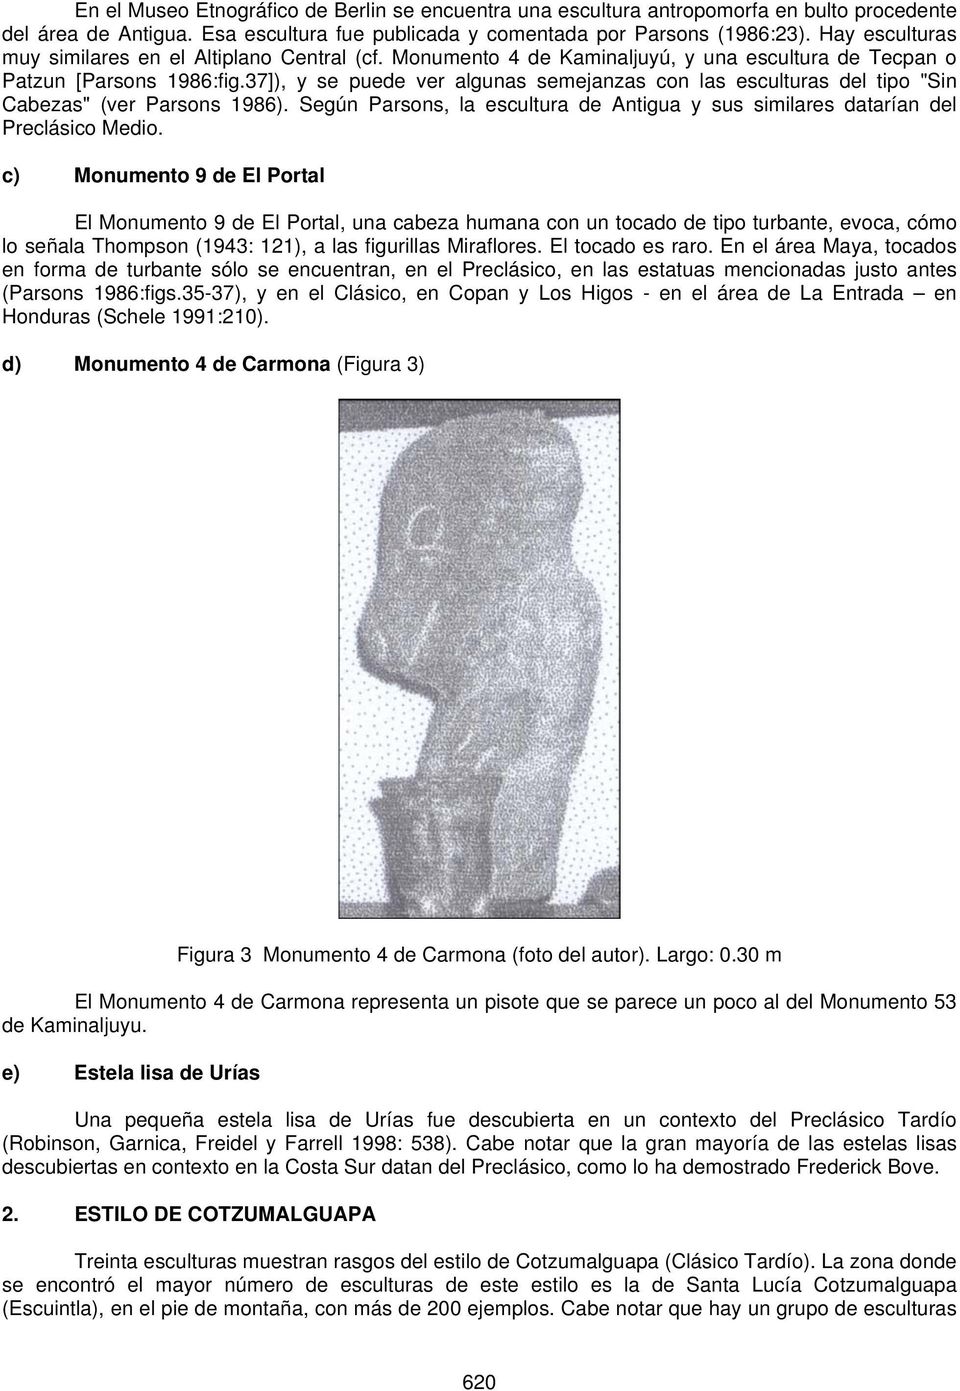 37]), y se puede ver algunas semejanzas con las esculturas del tipo "Sin Cabezas" (ver Parsons 1986). Según Parsons, la escultura de Antigua y sus similares datarían del Preclásico Medio.